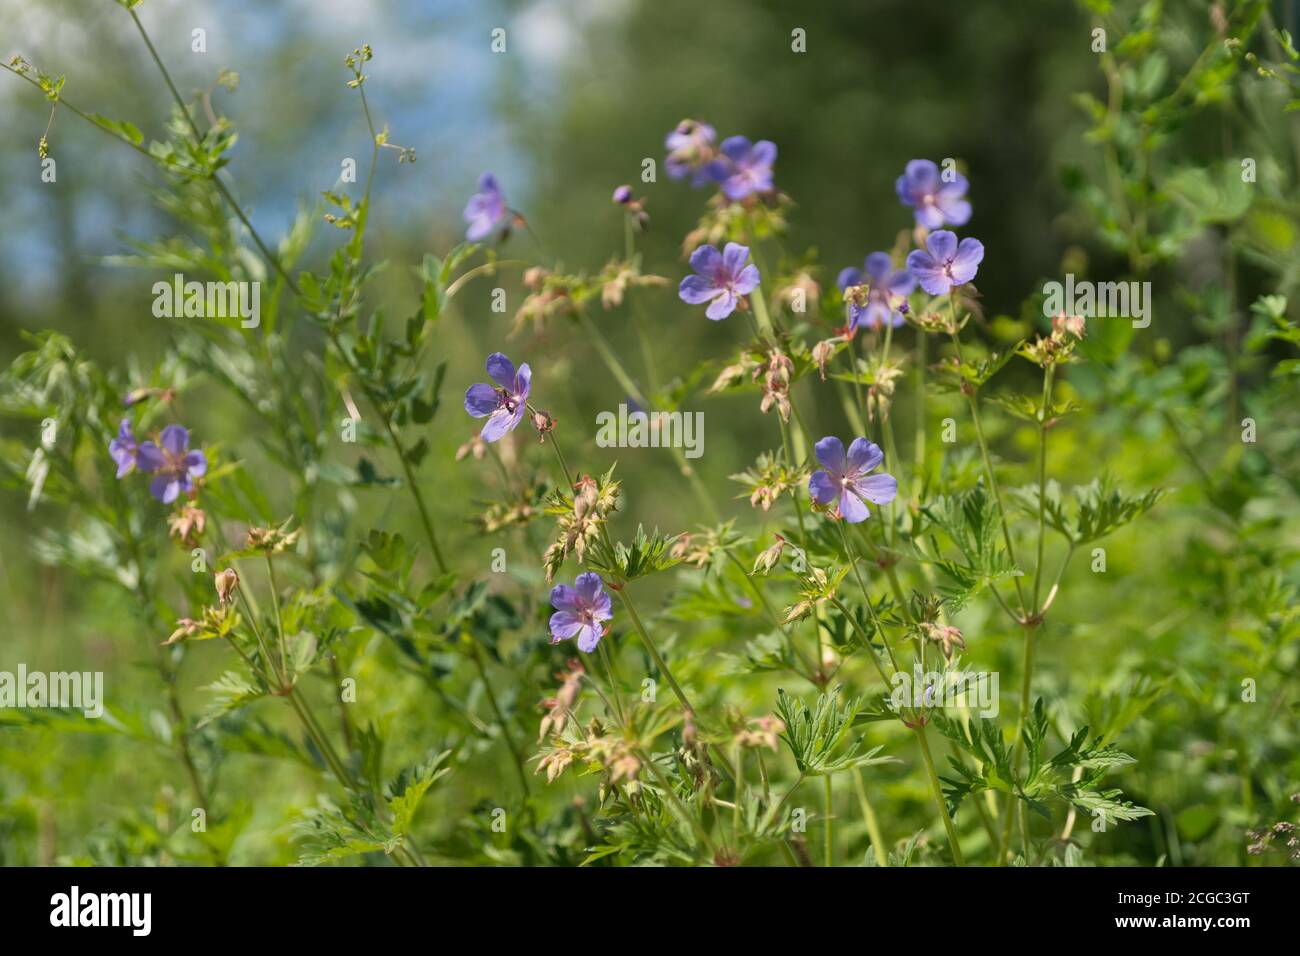 Viele Blumen von Wiesenschnabel {Geranium pratense} blühen auf einer grünen Wiese im Wald. Stockfoto